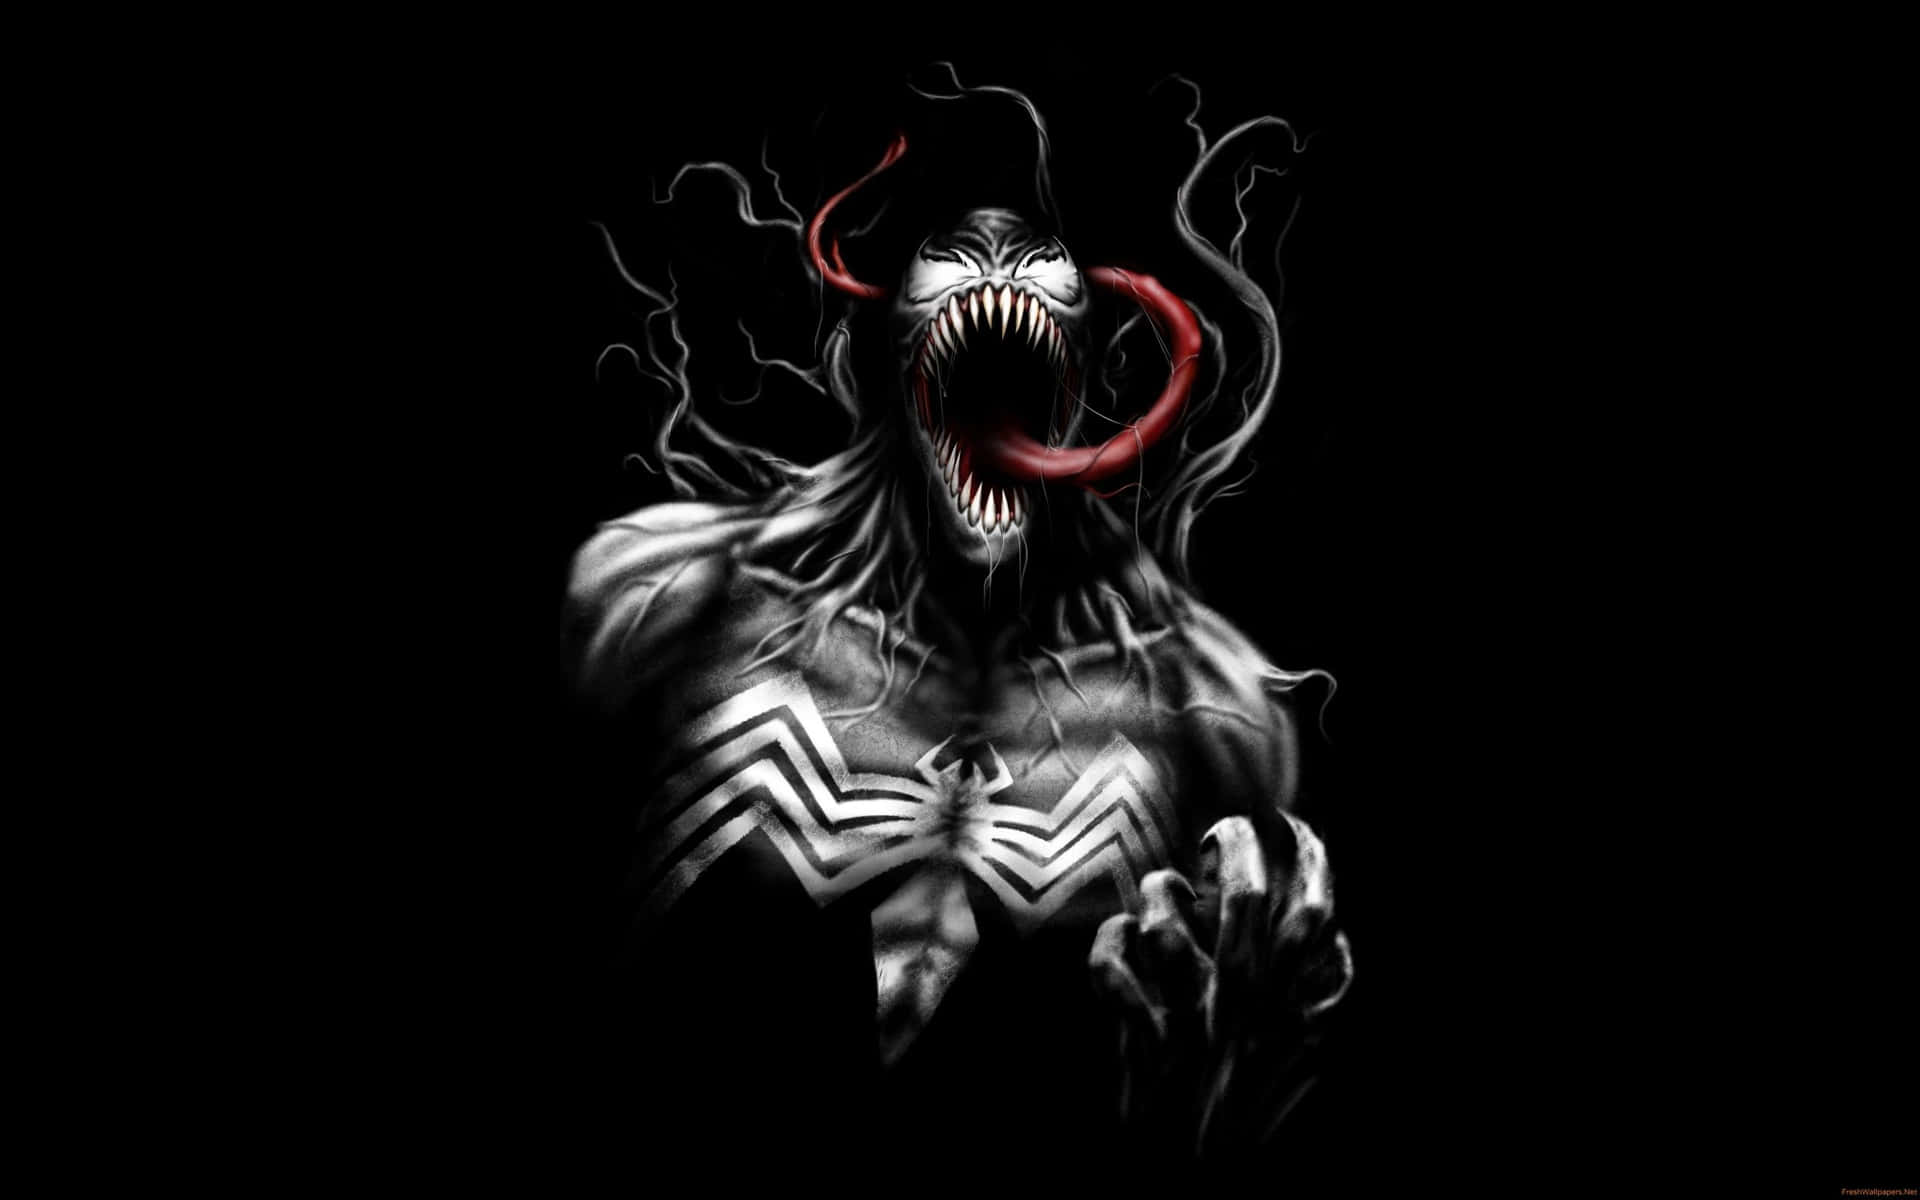 A blinding abstract illustration of Venom Wallpaper